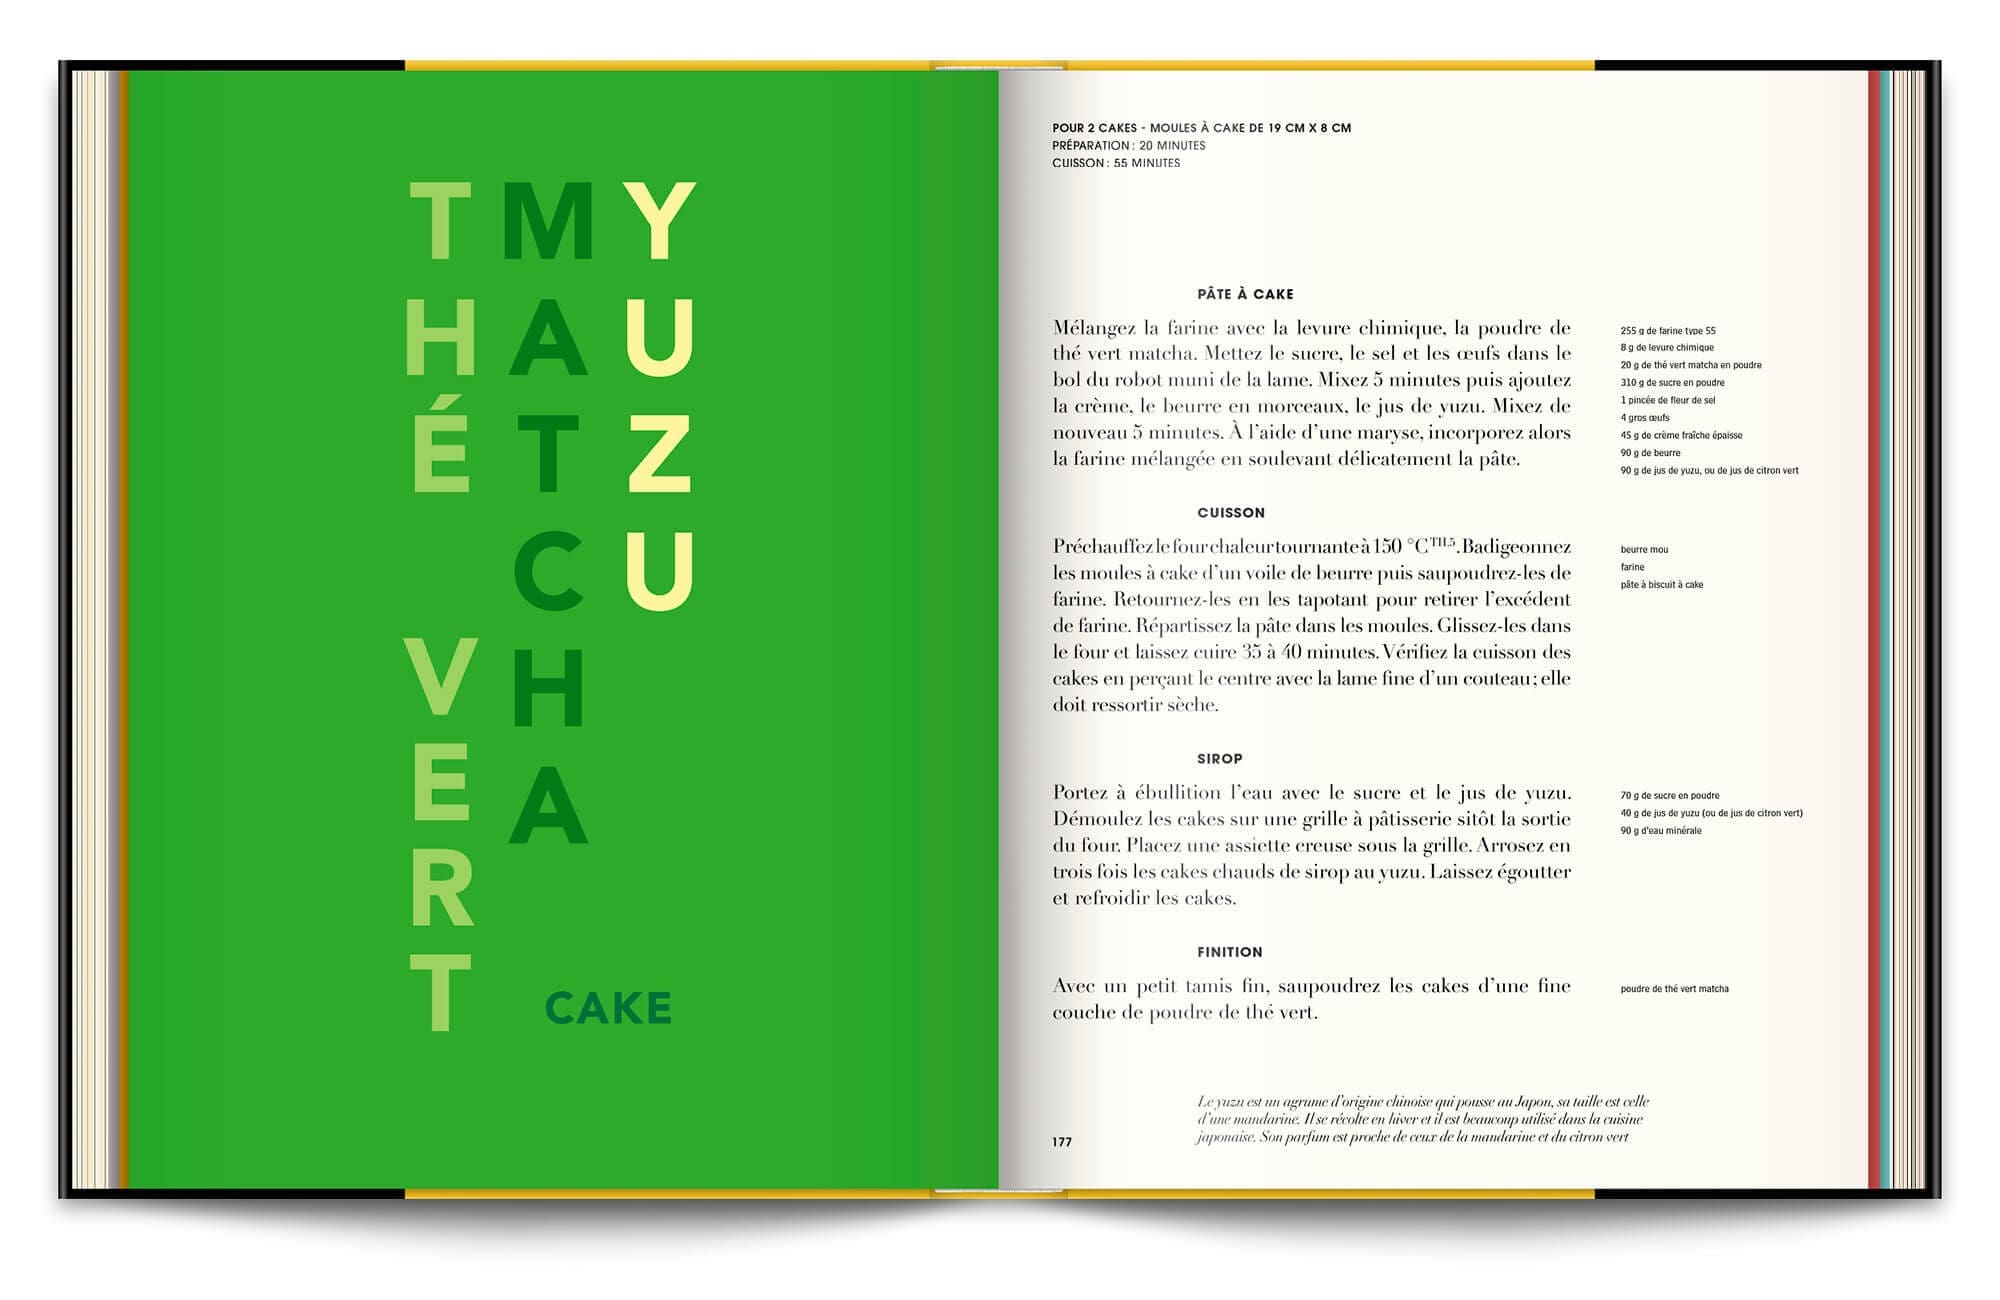 Typographie expressive sur les ingrédients des recettes pour le livre Infiniment de Pierre Hermé, graphisme et mise en page IchetKar